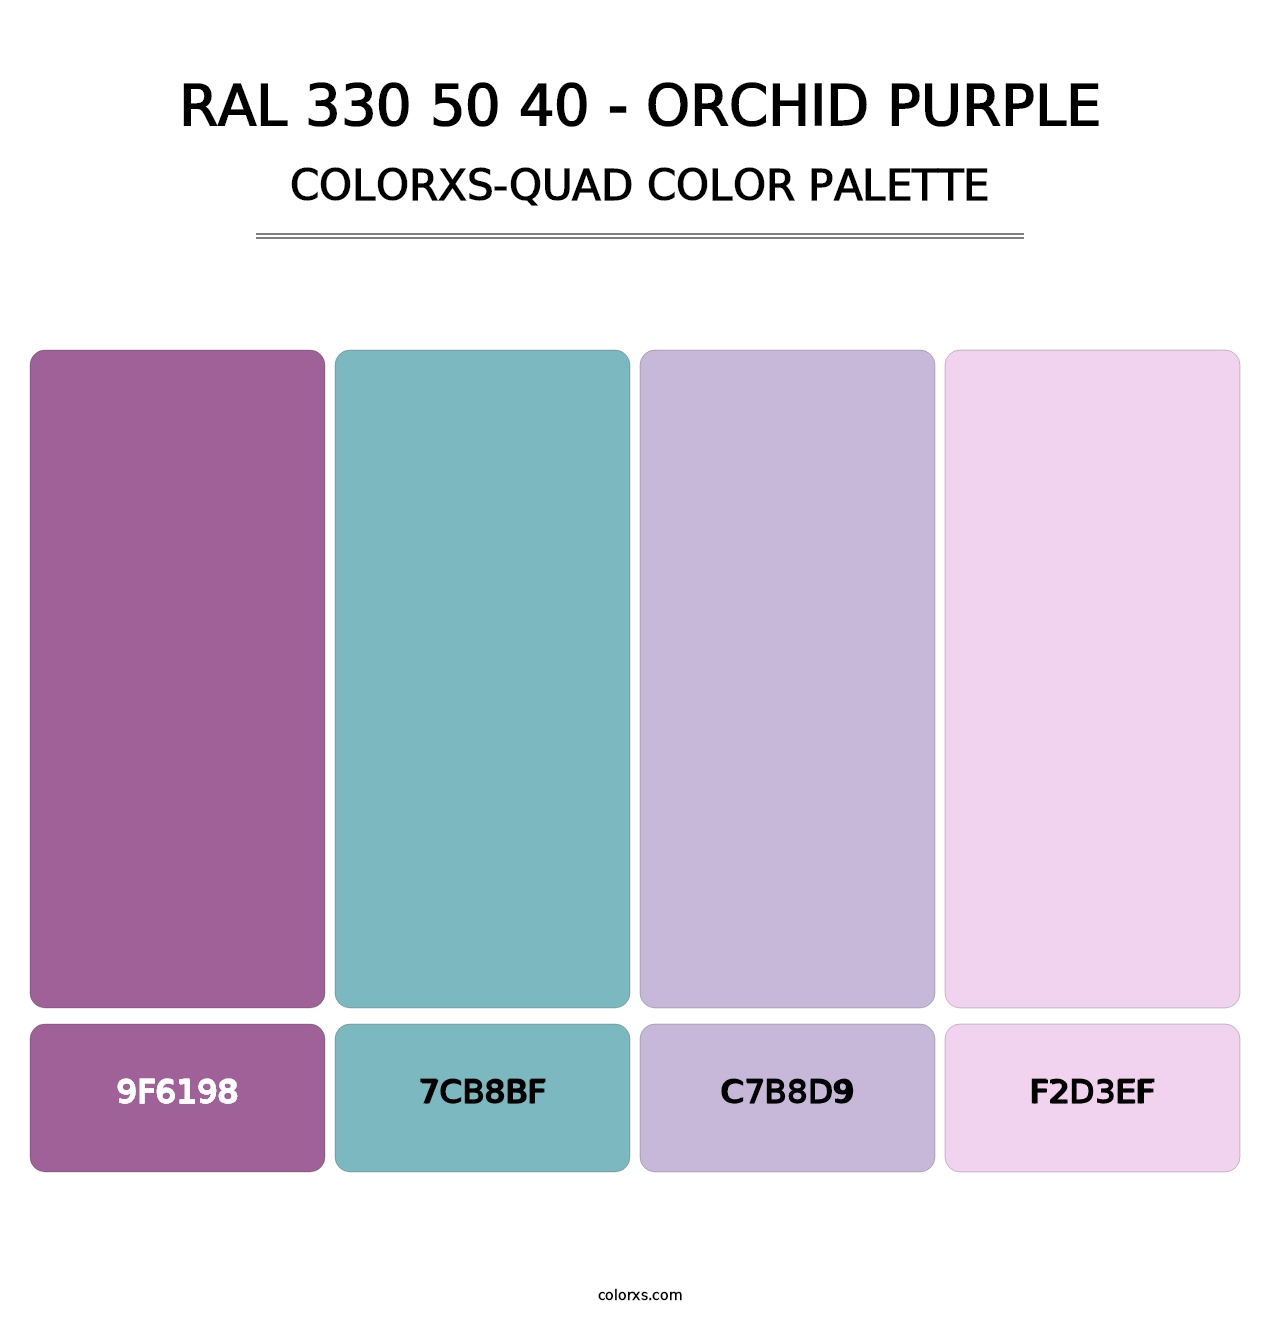 RAL 330 50 40 - Orchid Purple - Colorxs Quad Palette